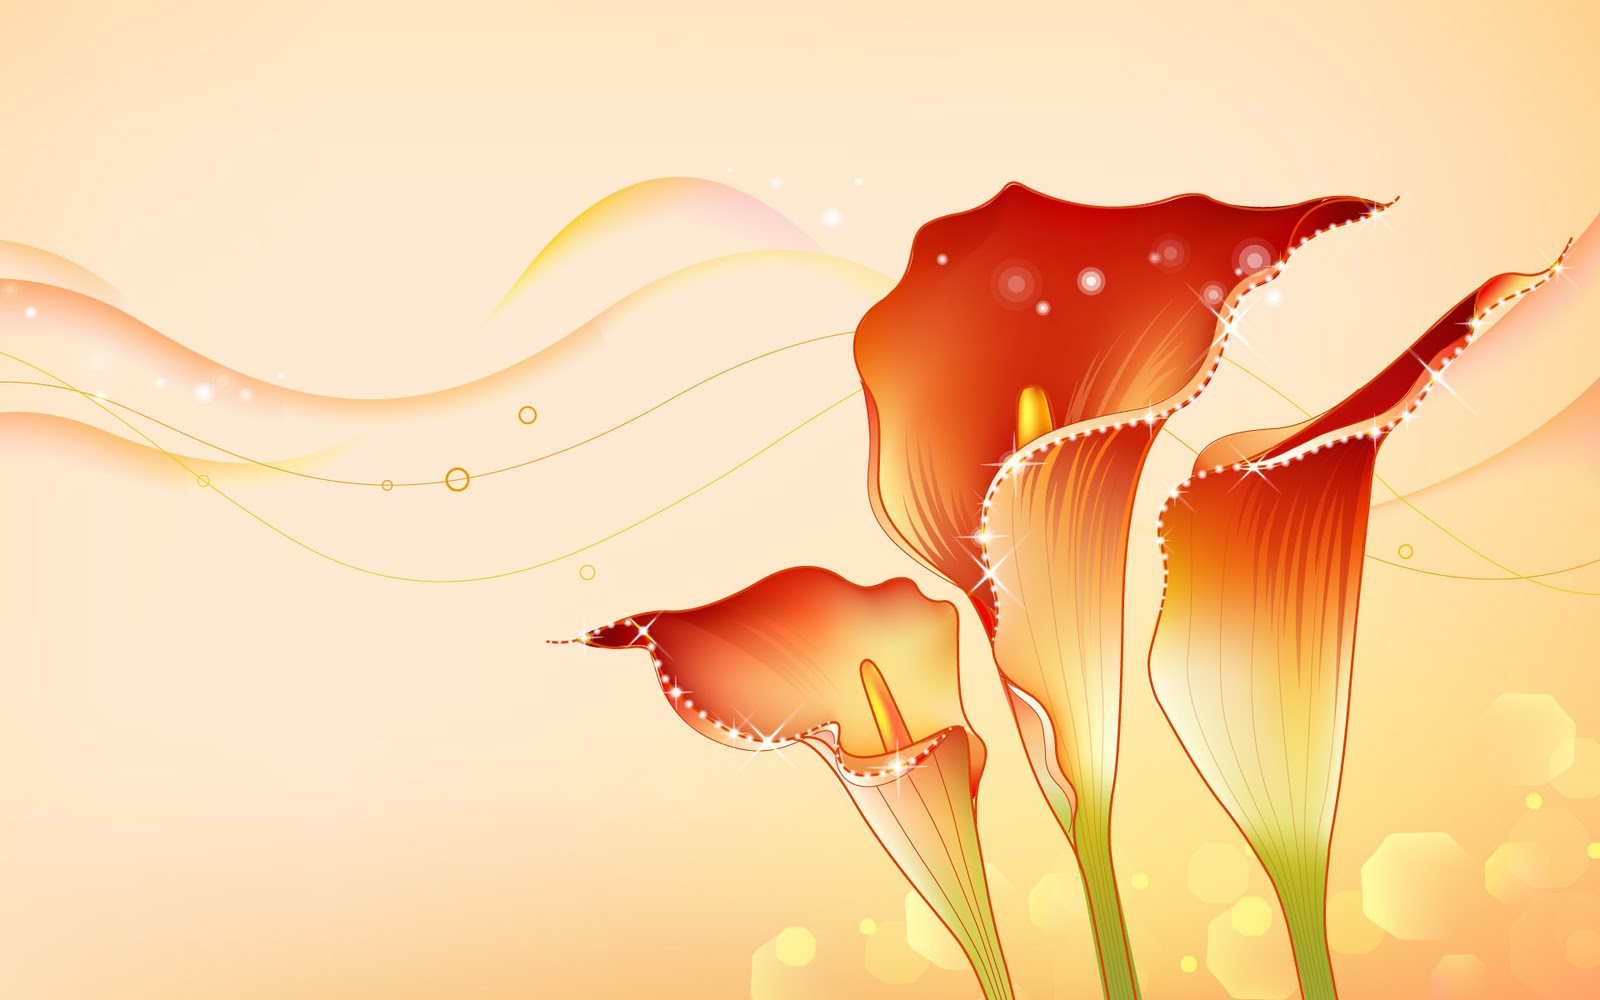 High Quality Desktop Wallpaper Downloads: Abstract Flower Designs